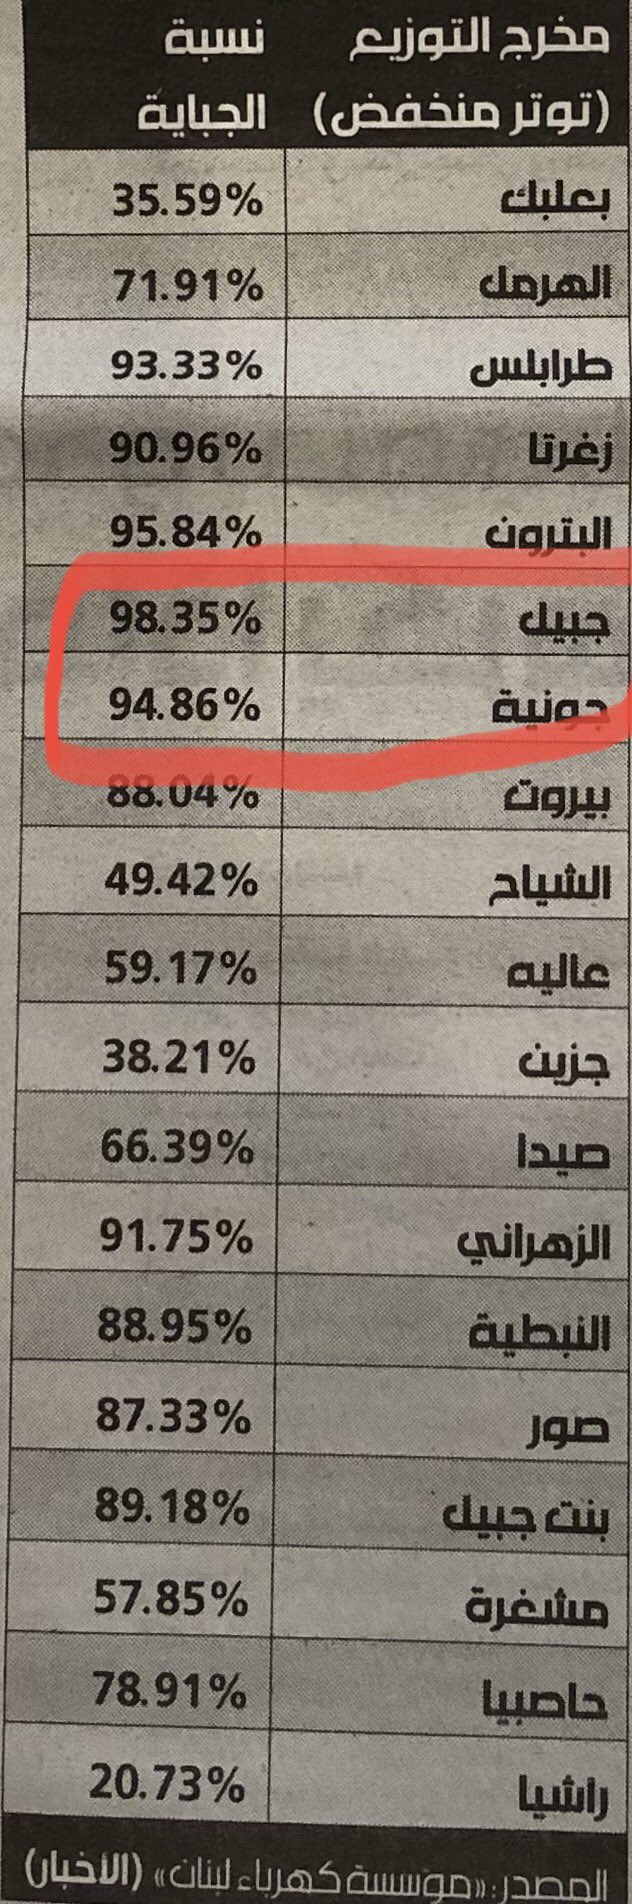 صورة عن نسبة الجباية الصادرة عن مؤسسة كهرباء لبنان